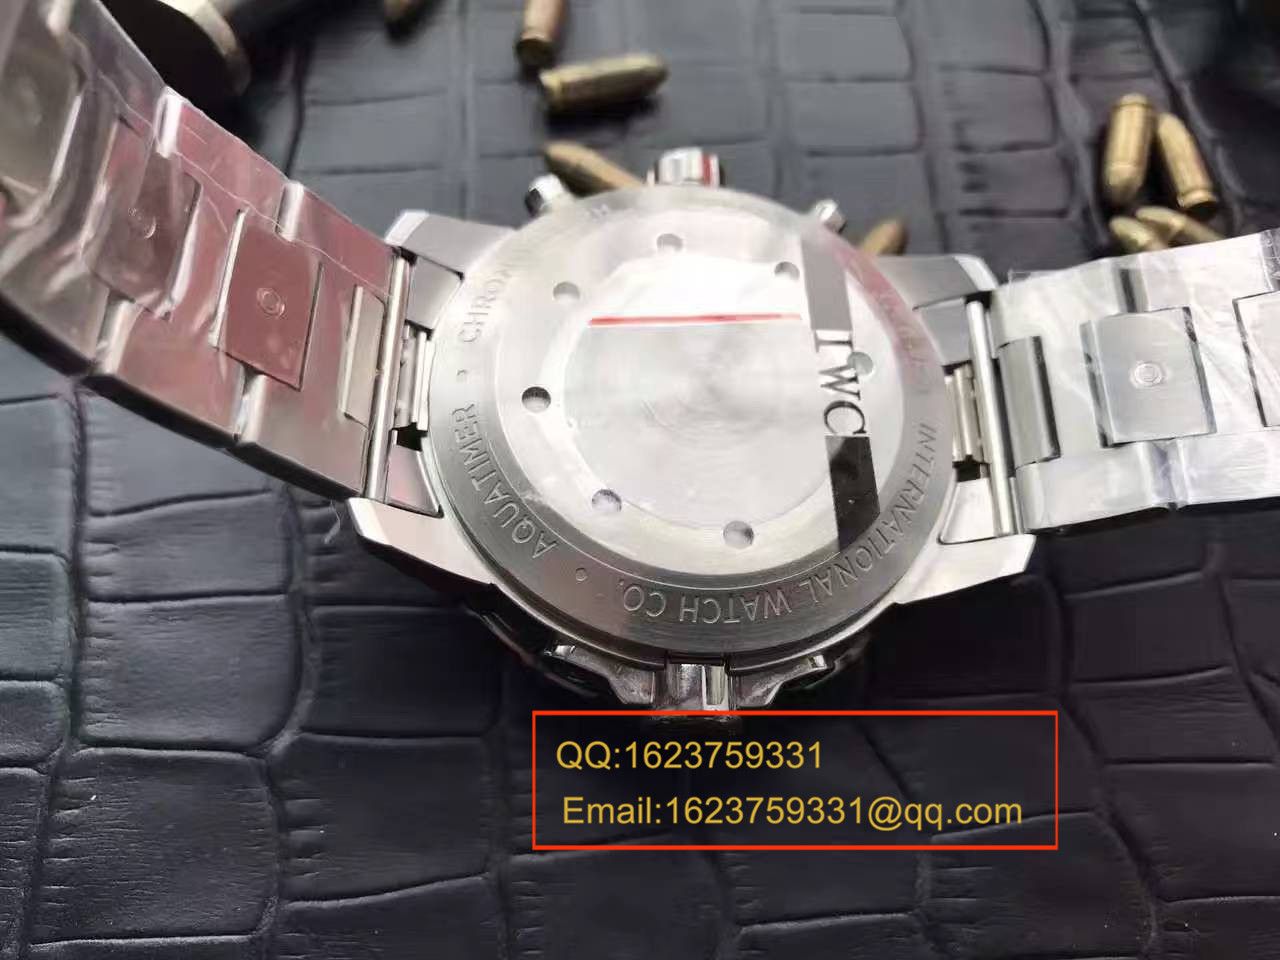 【独家视频测评一比一超A高仿手表】万国海洋时计CHRONOGRAPH计时系列 IW376804腕表 